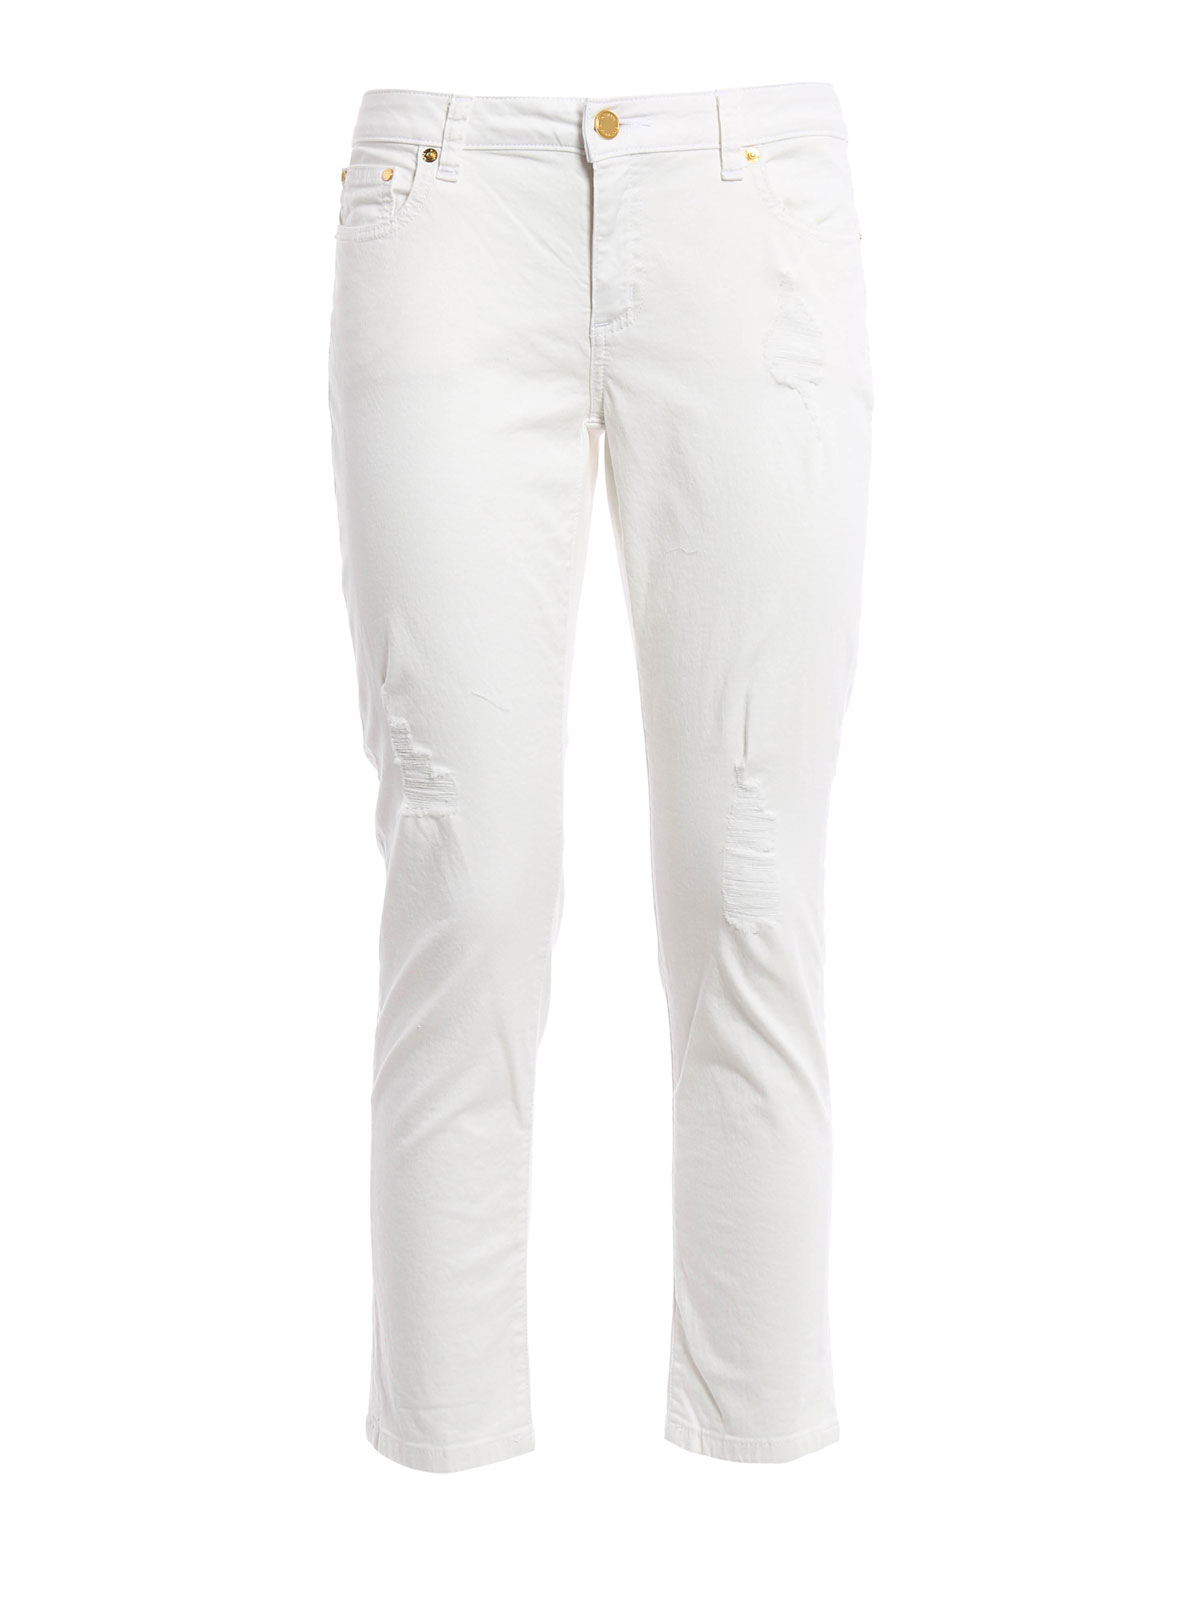 michael kors izzy skinny jeans white